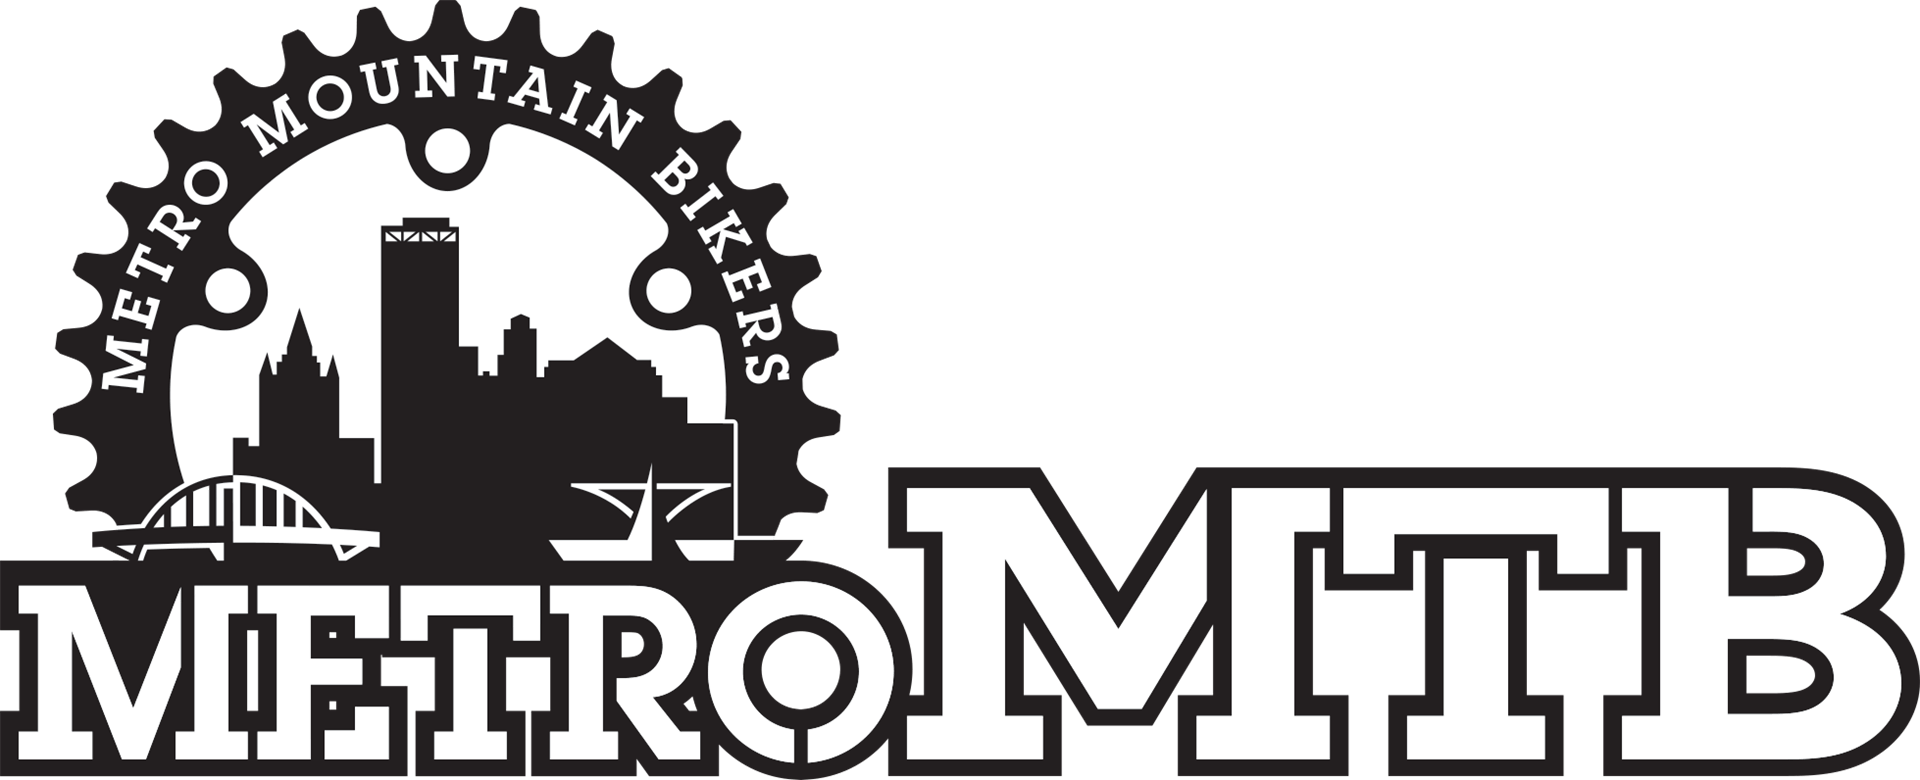 MTB Mountain Logo - Metro Mountain Bikers